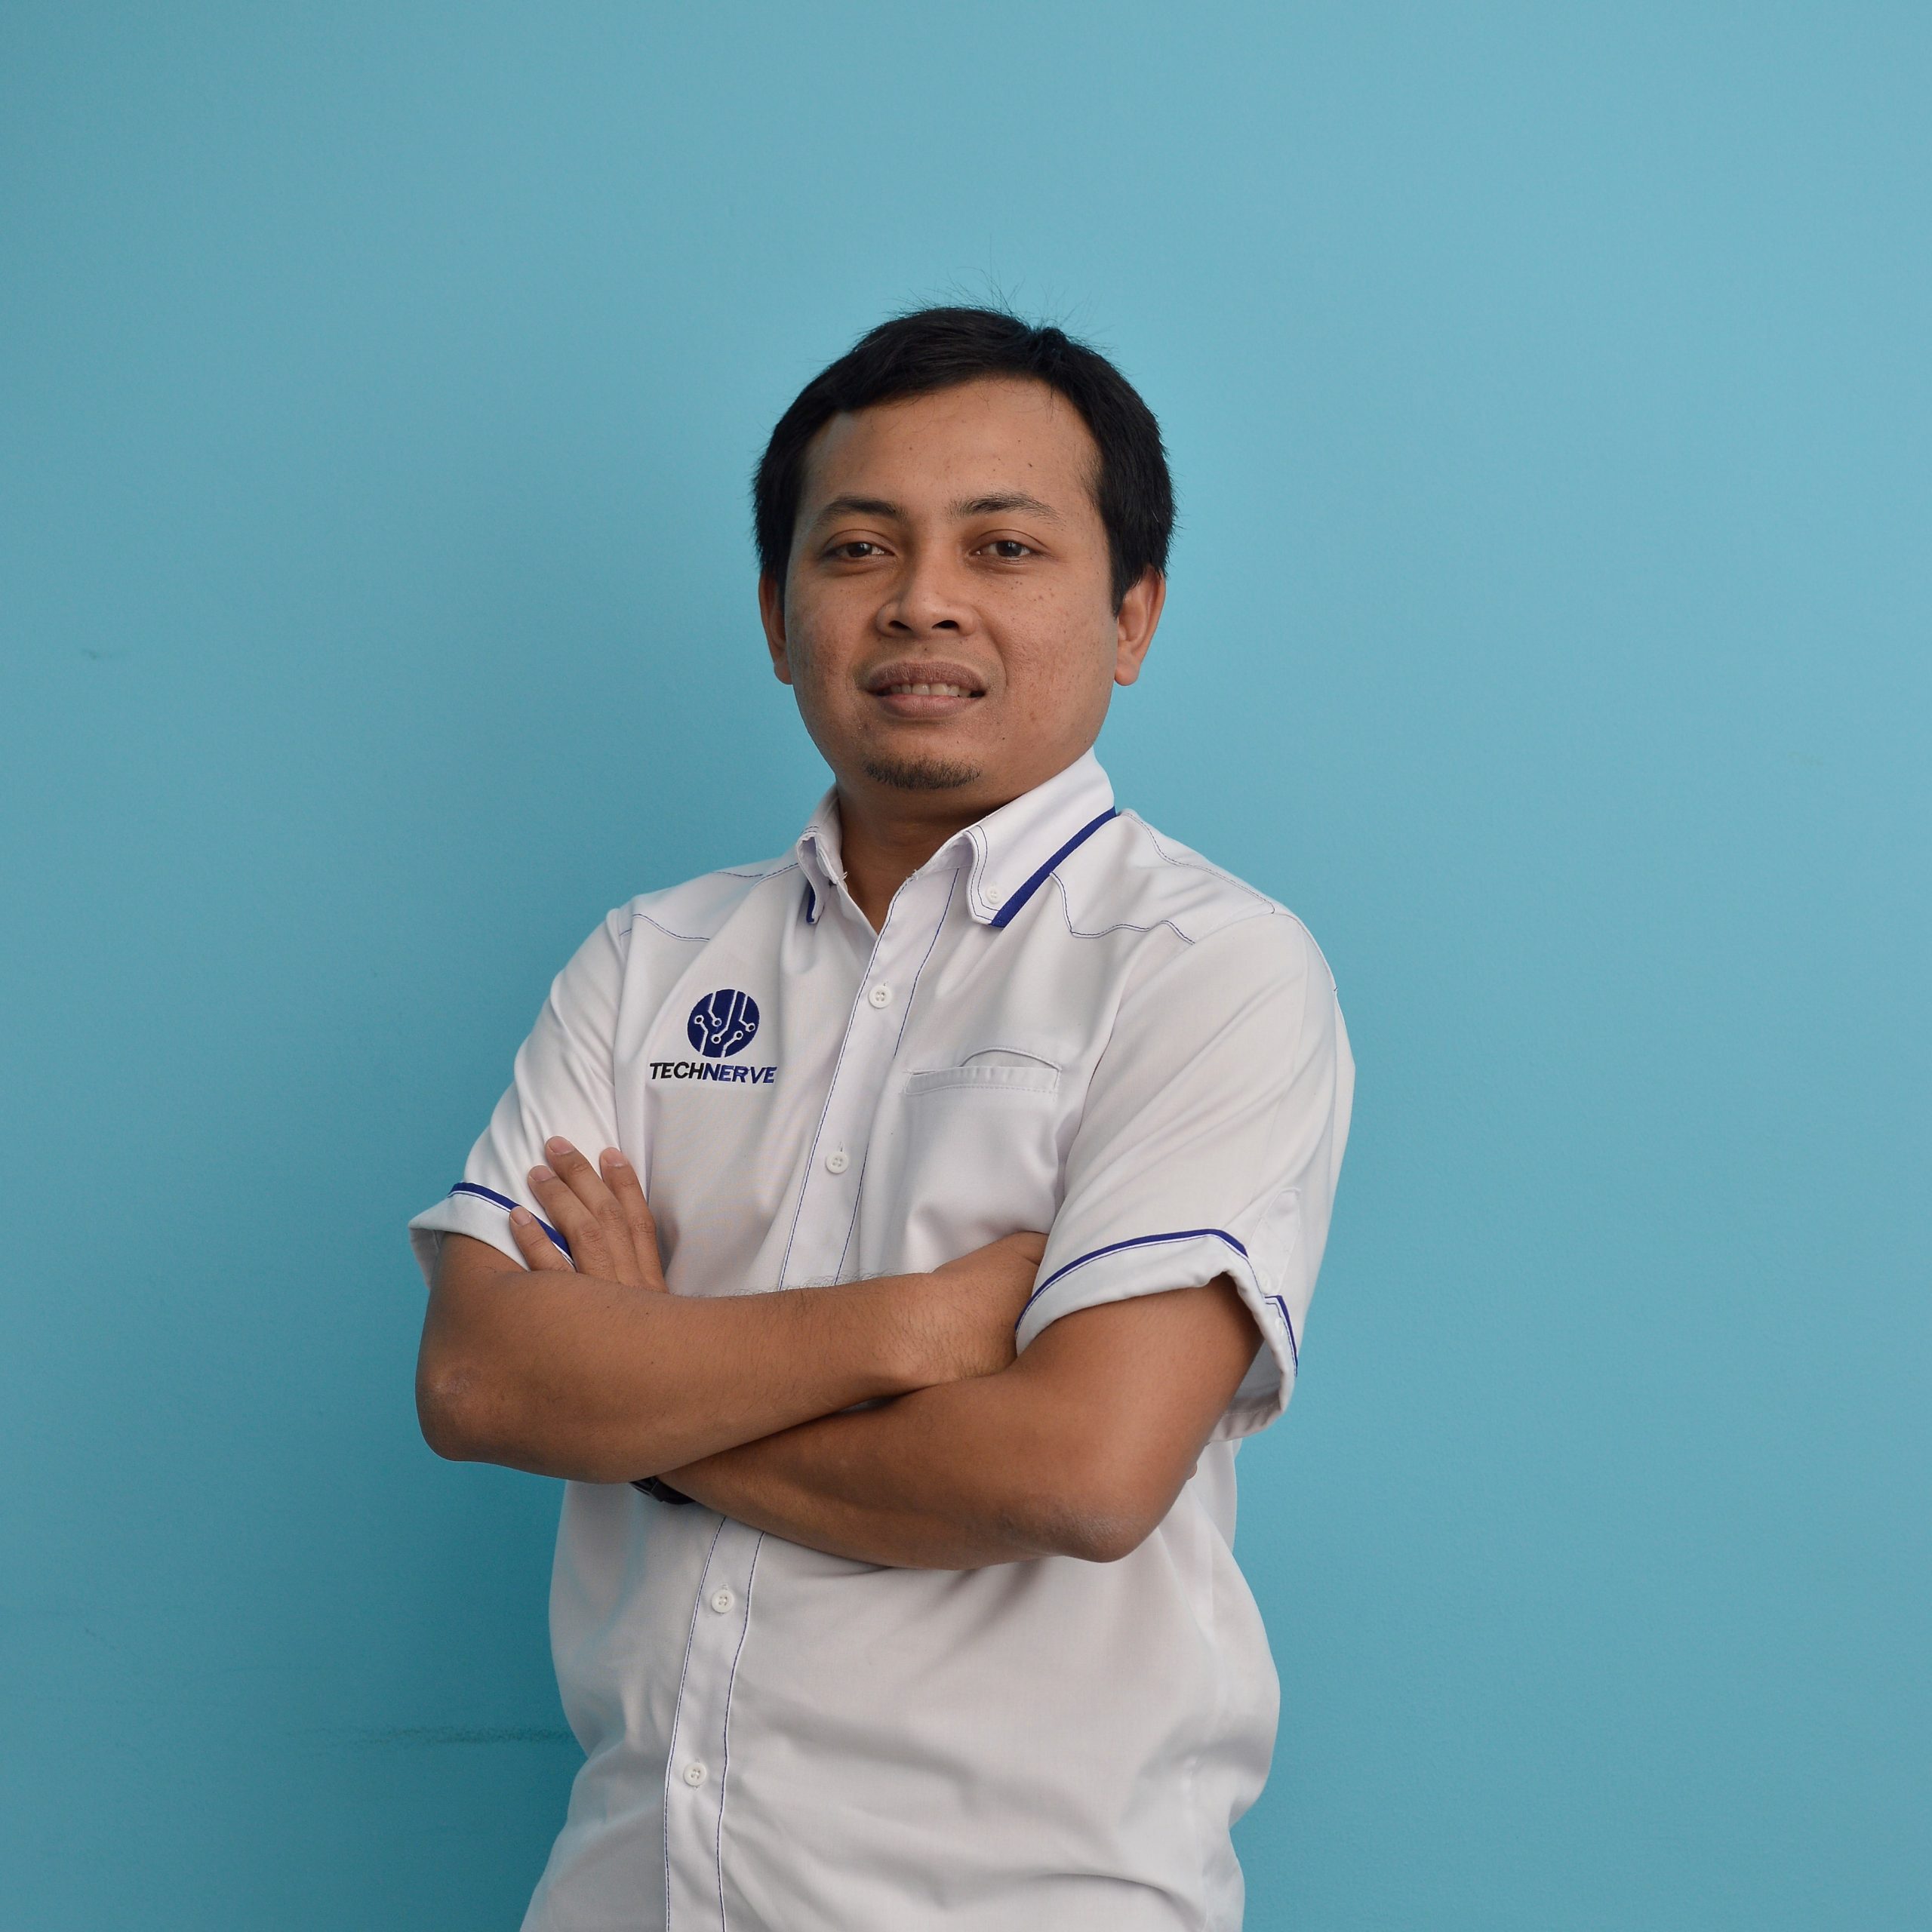 Mohd Rusman Arief A Rahman